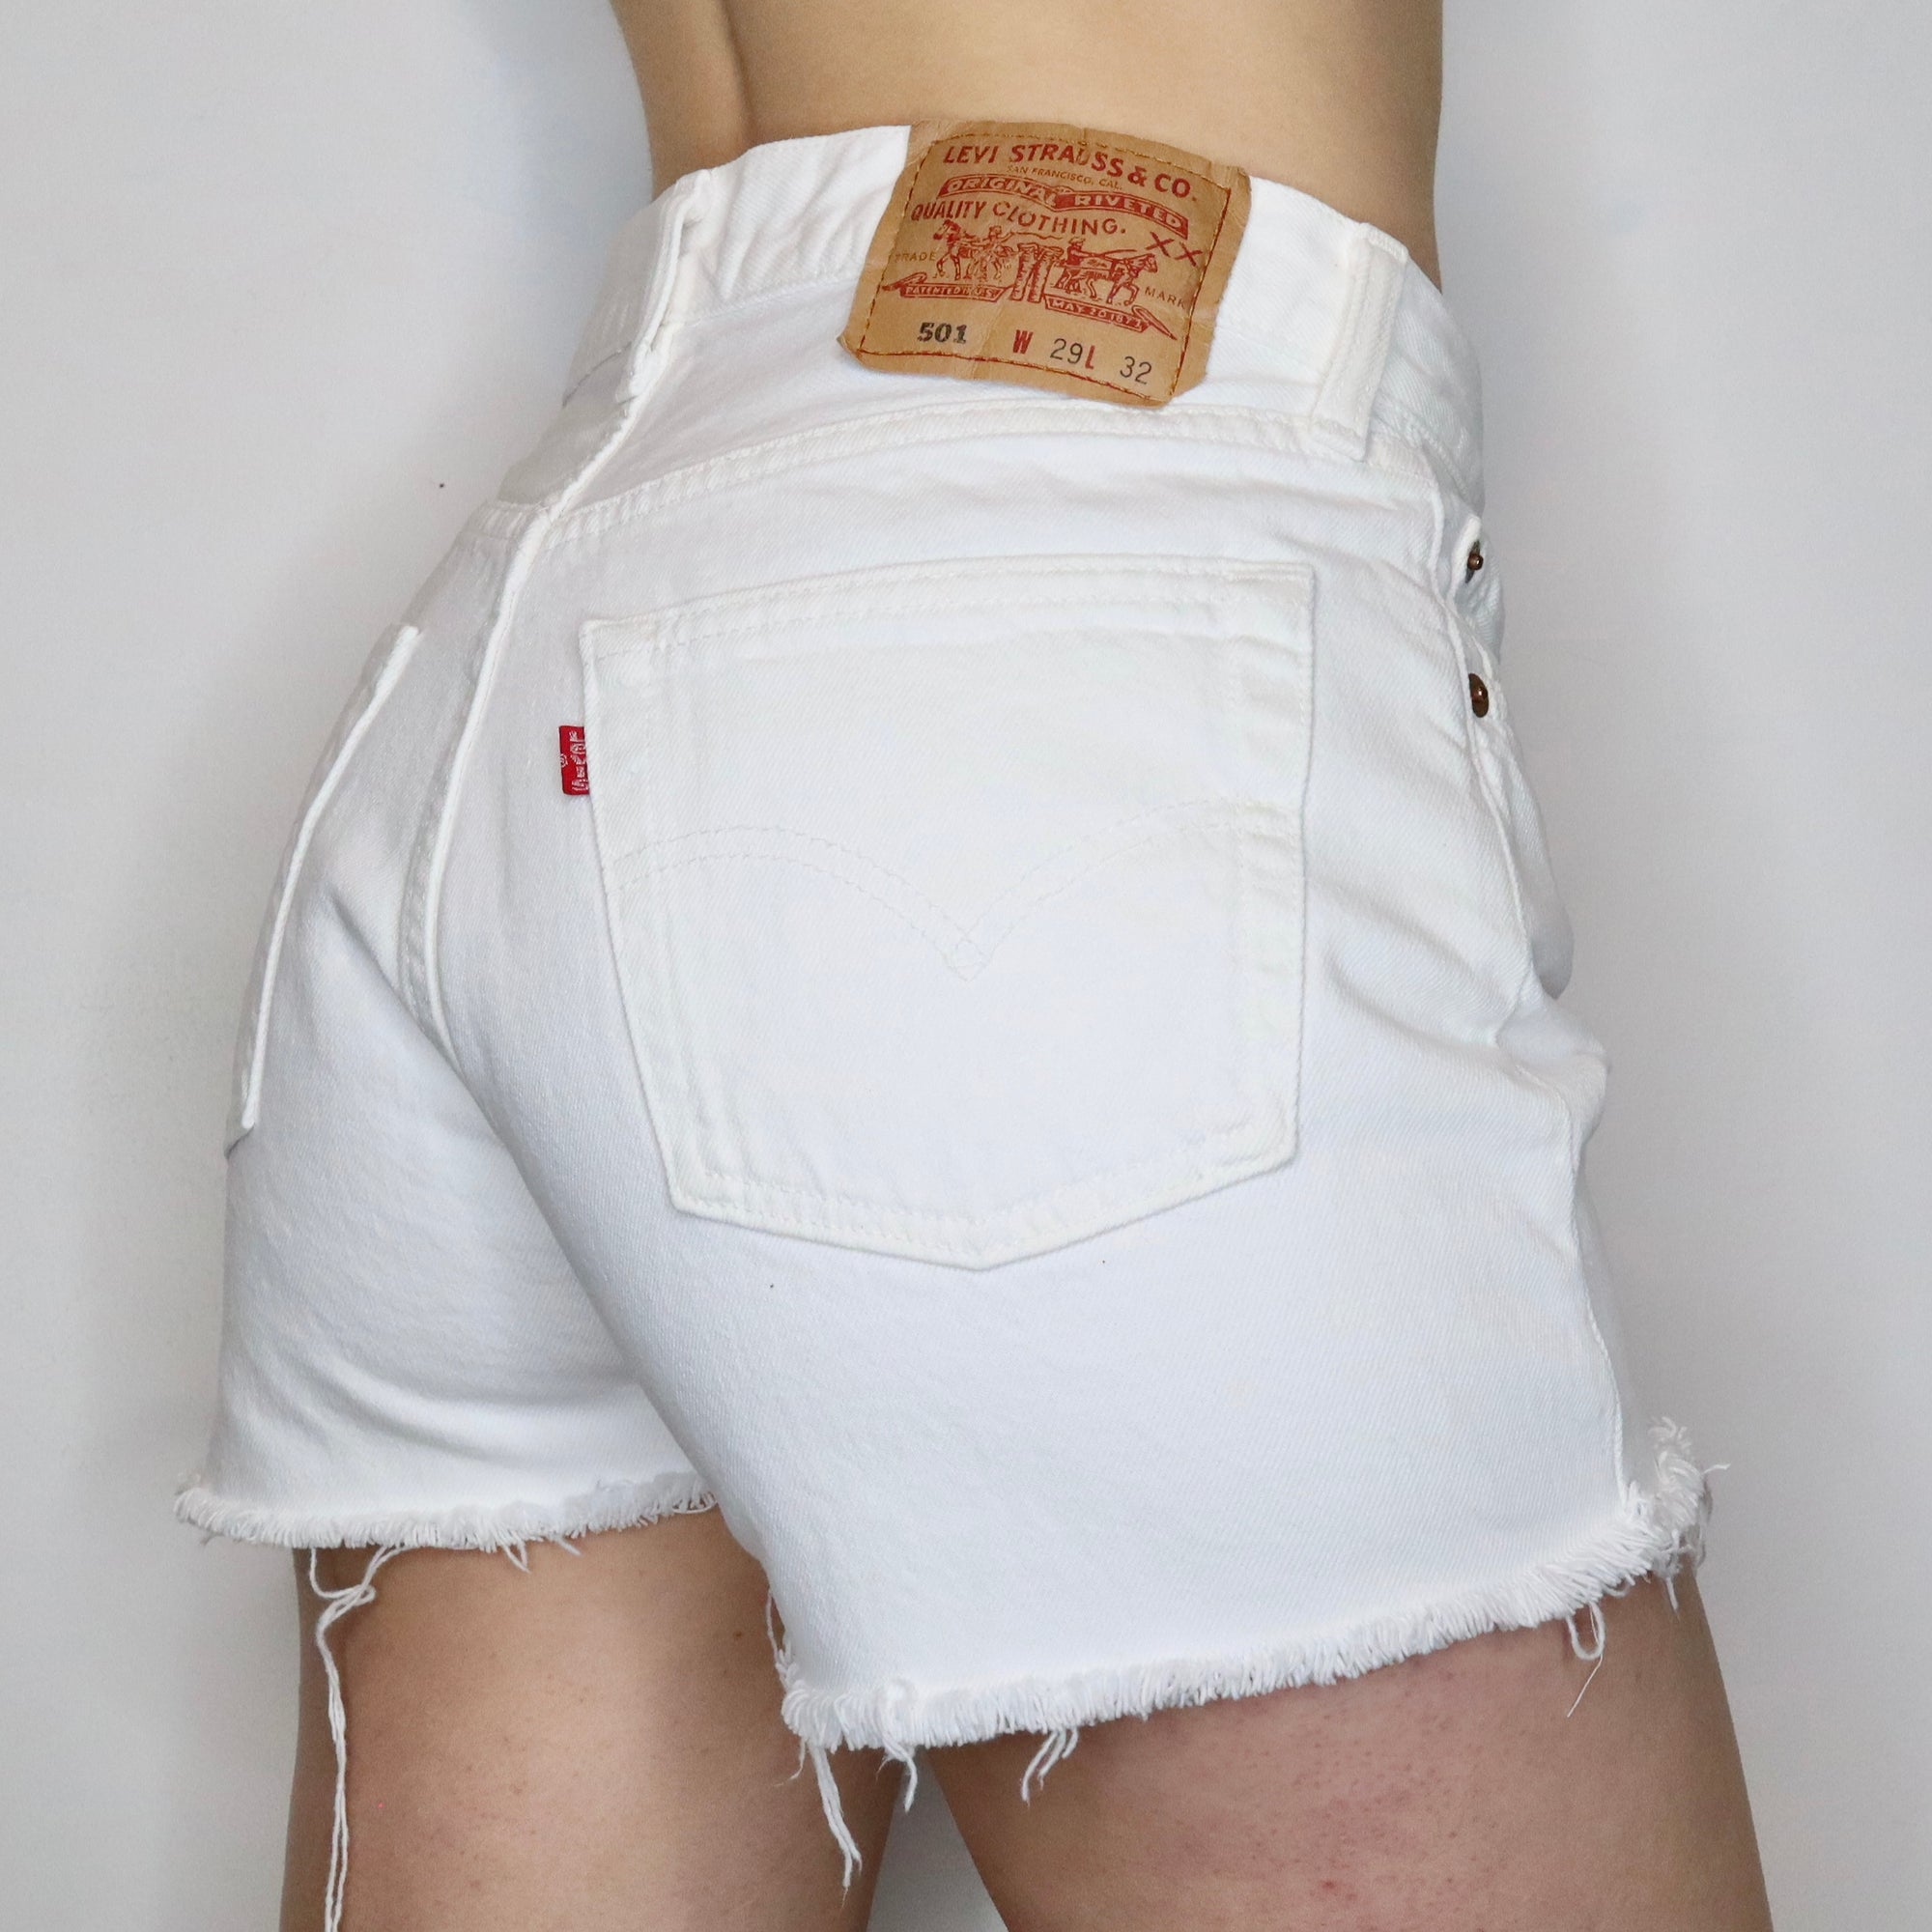 White Levi's 501 Shorts 